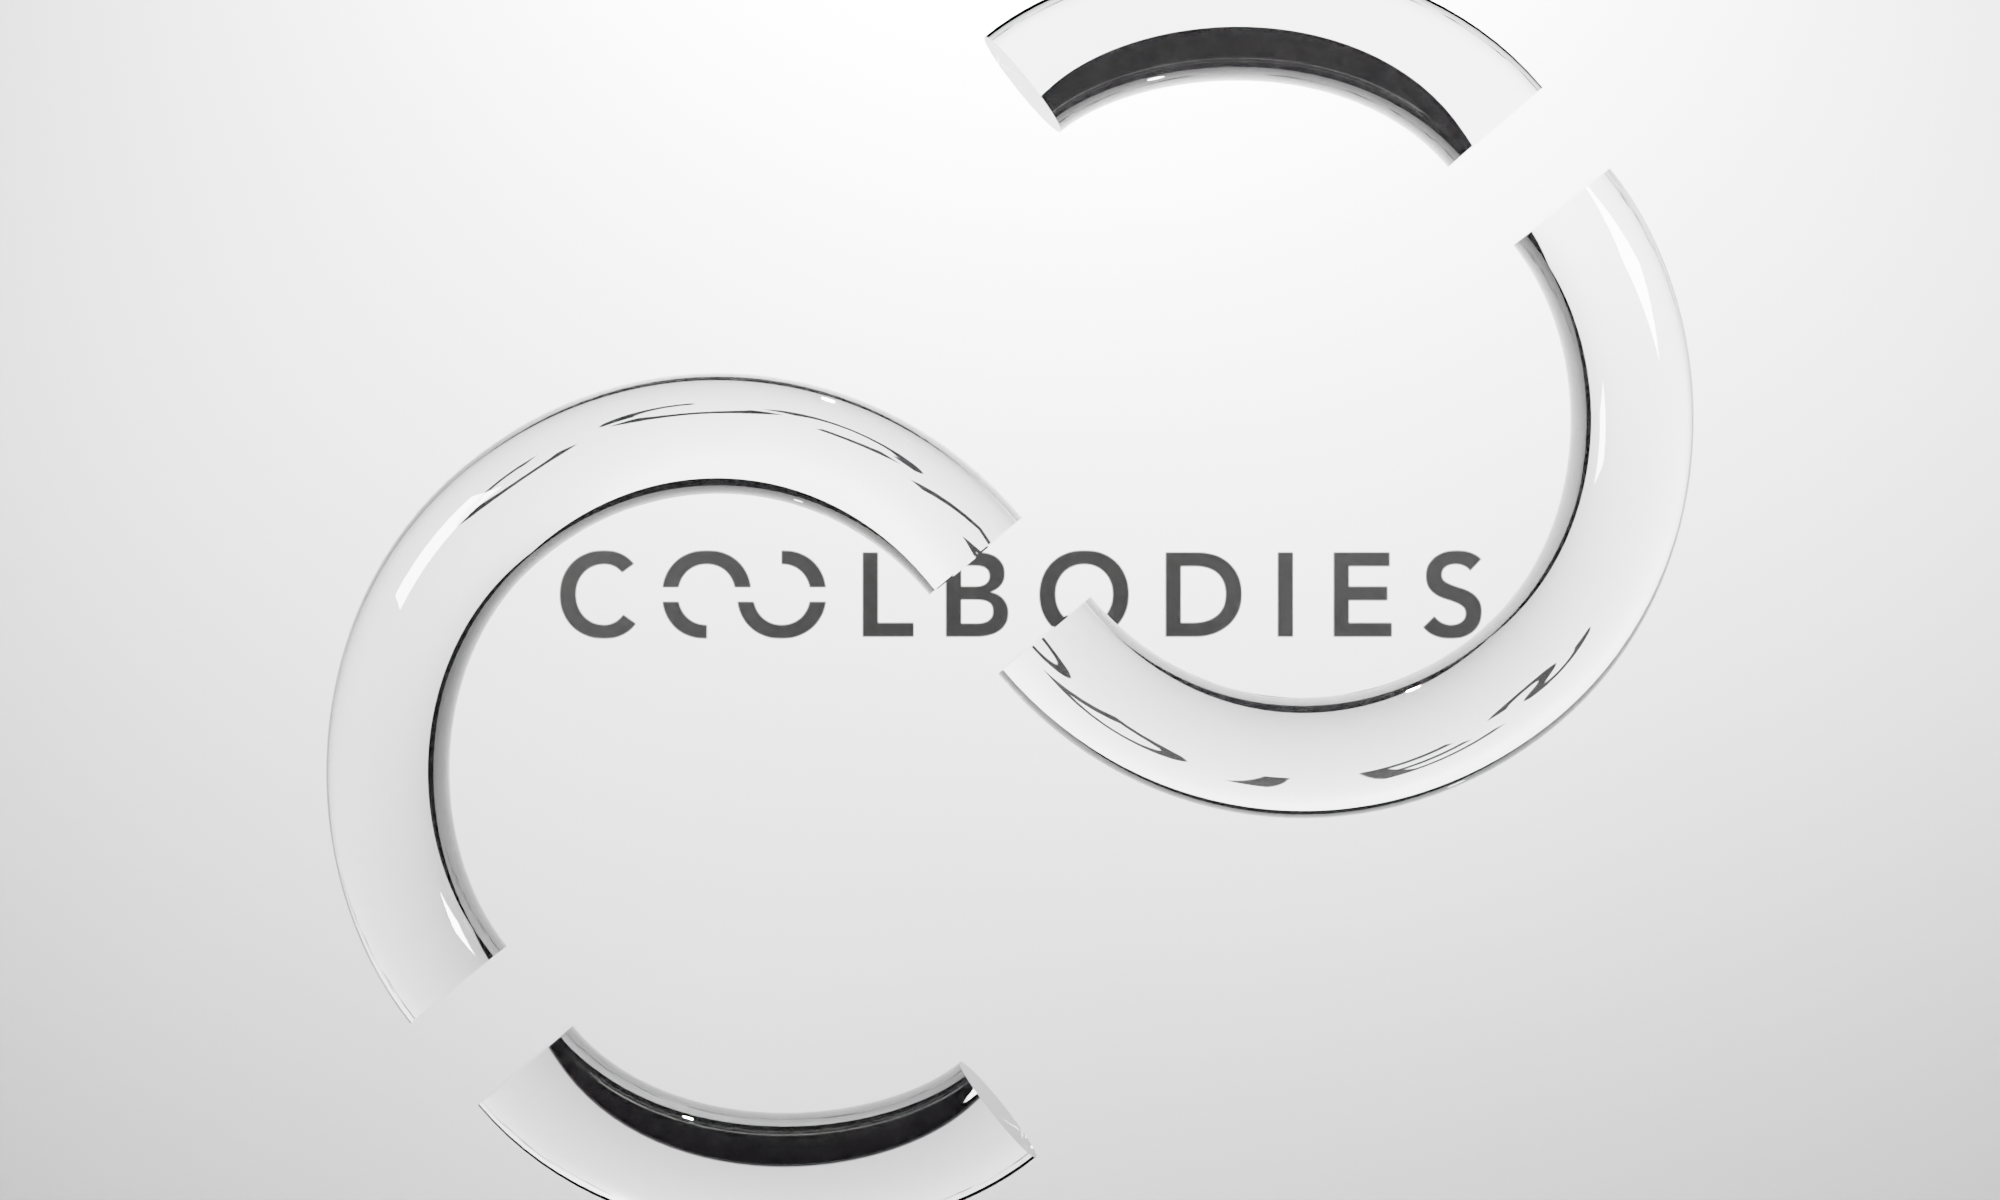 coolbodies